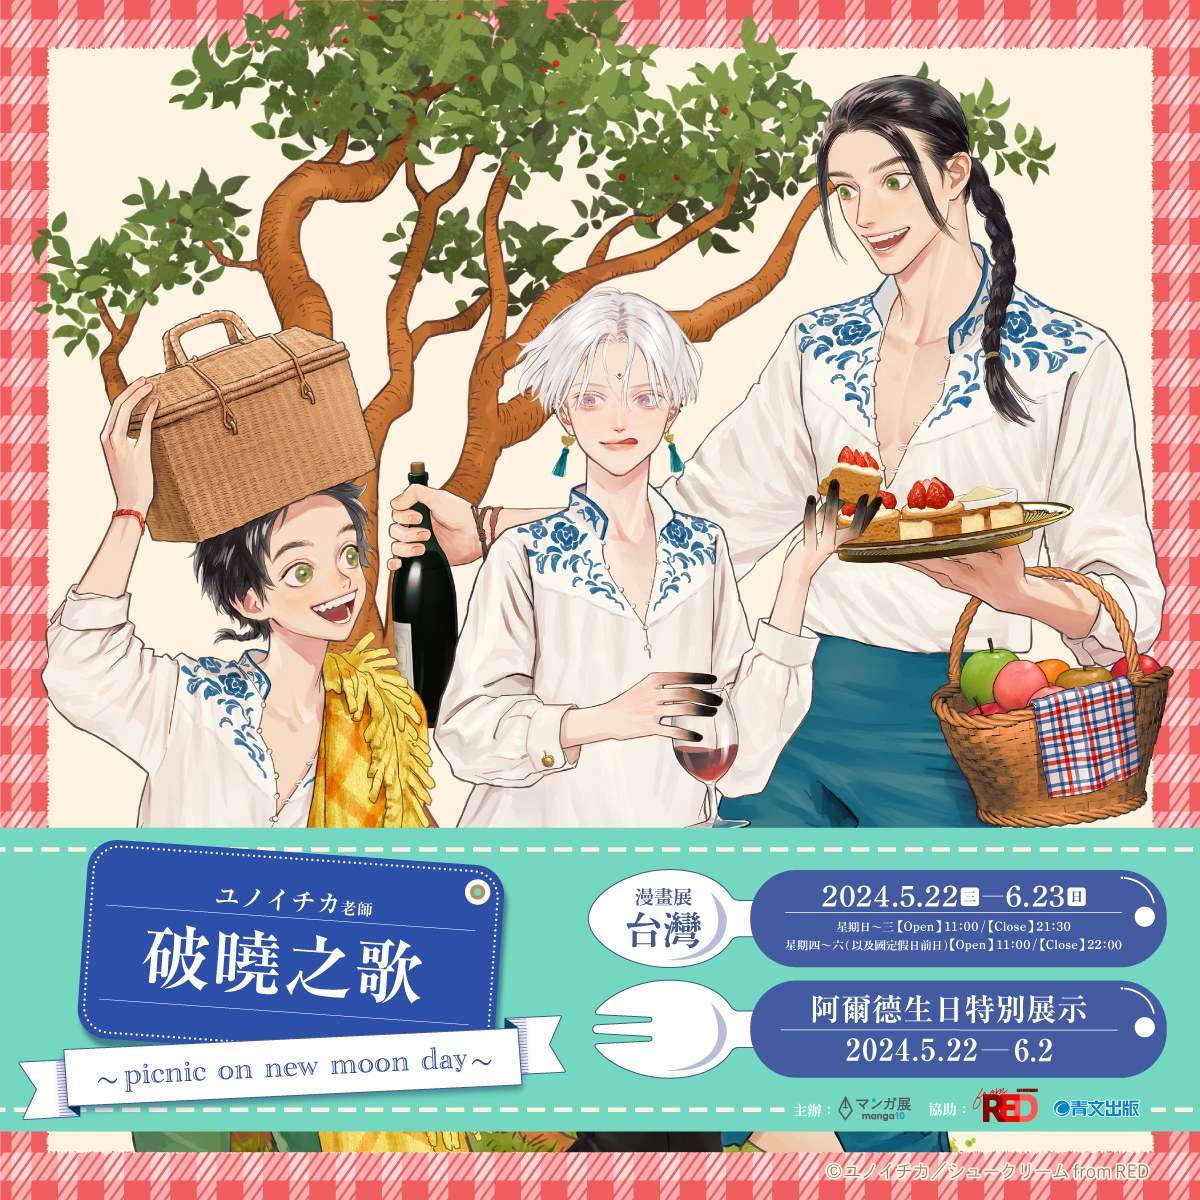 「破曉之歌 ~ picnic on new moon day ~ 」商品販售活動 at 漫畫展臺灣